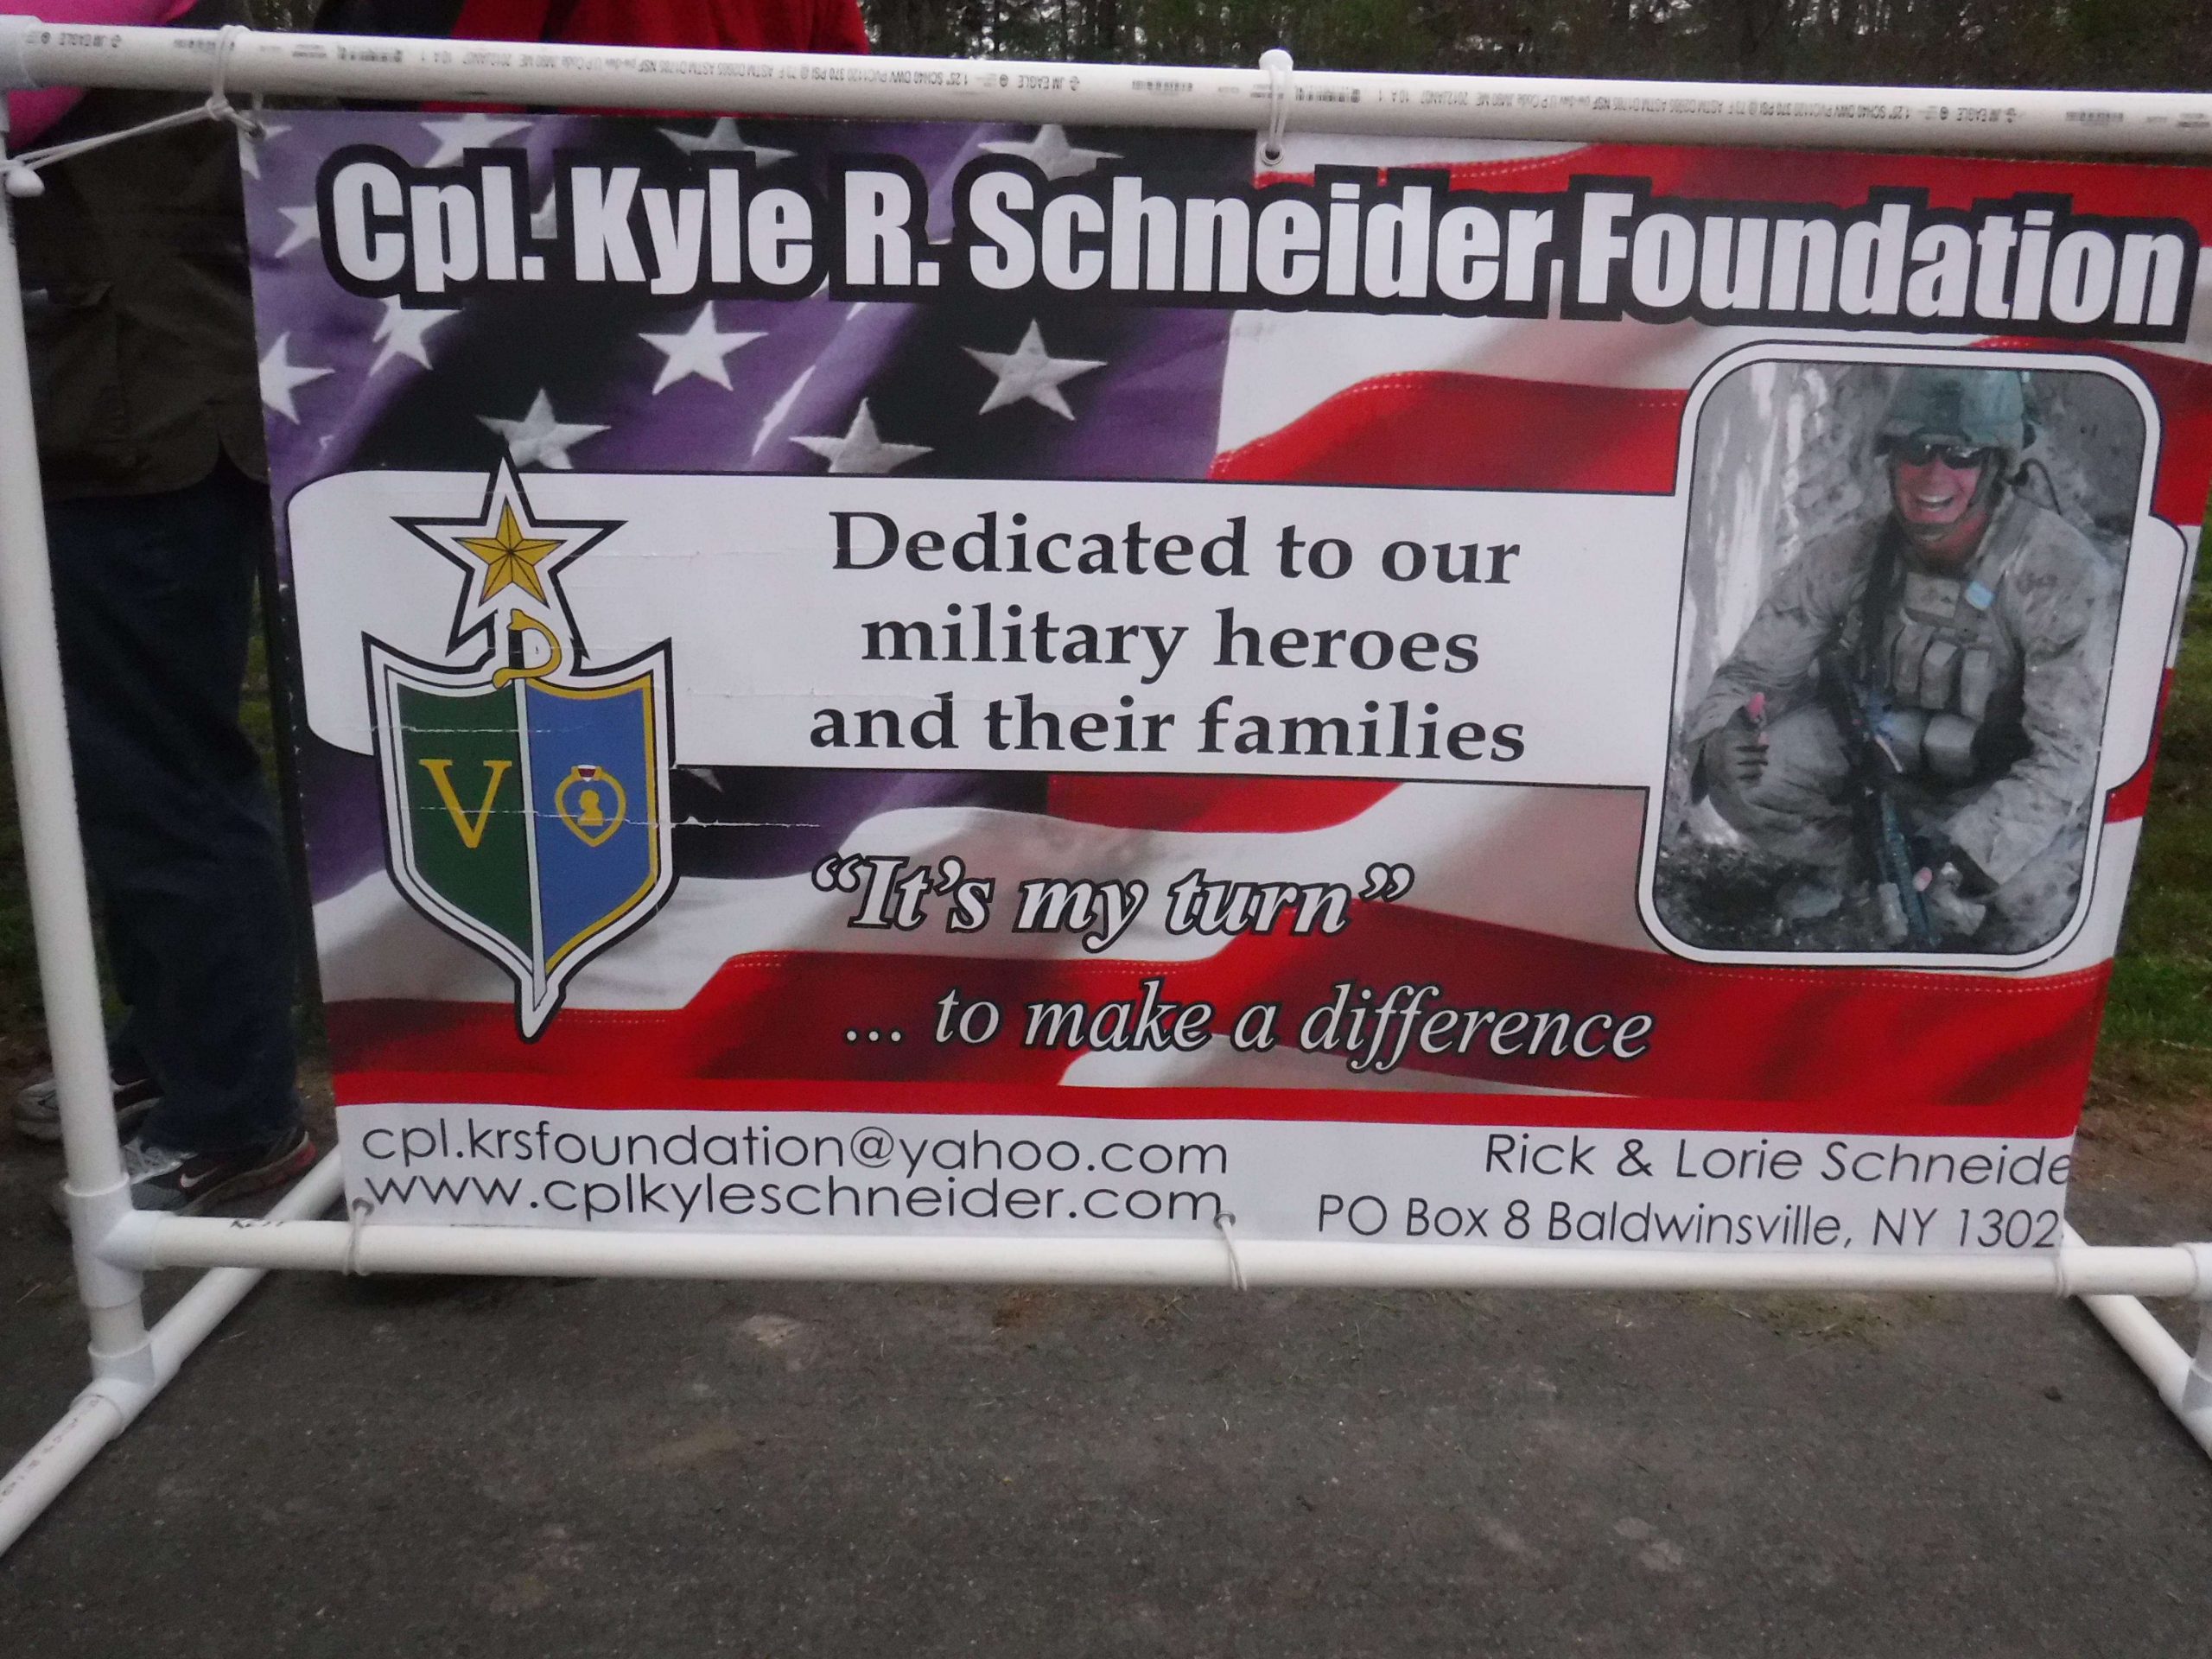 Cpl. Kyle Scheneider Foundation plays a very important part in todayâs activities